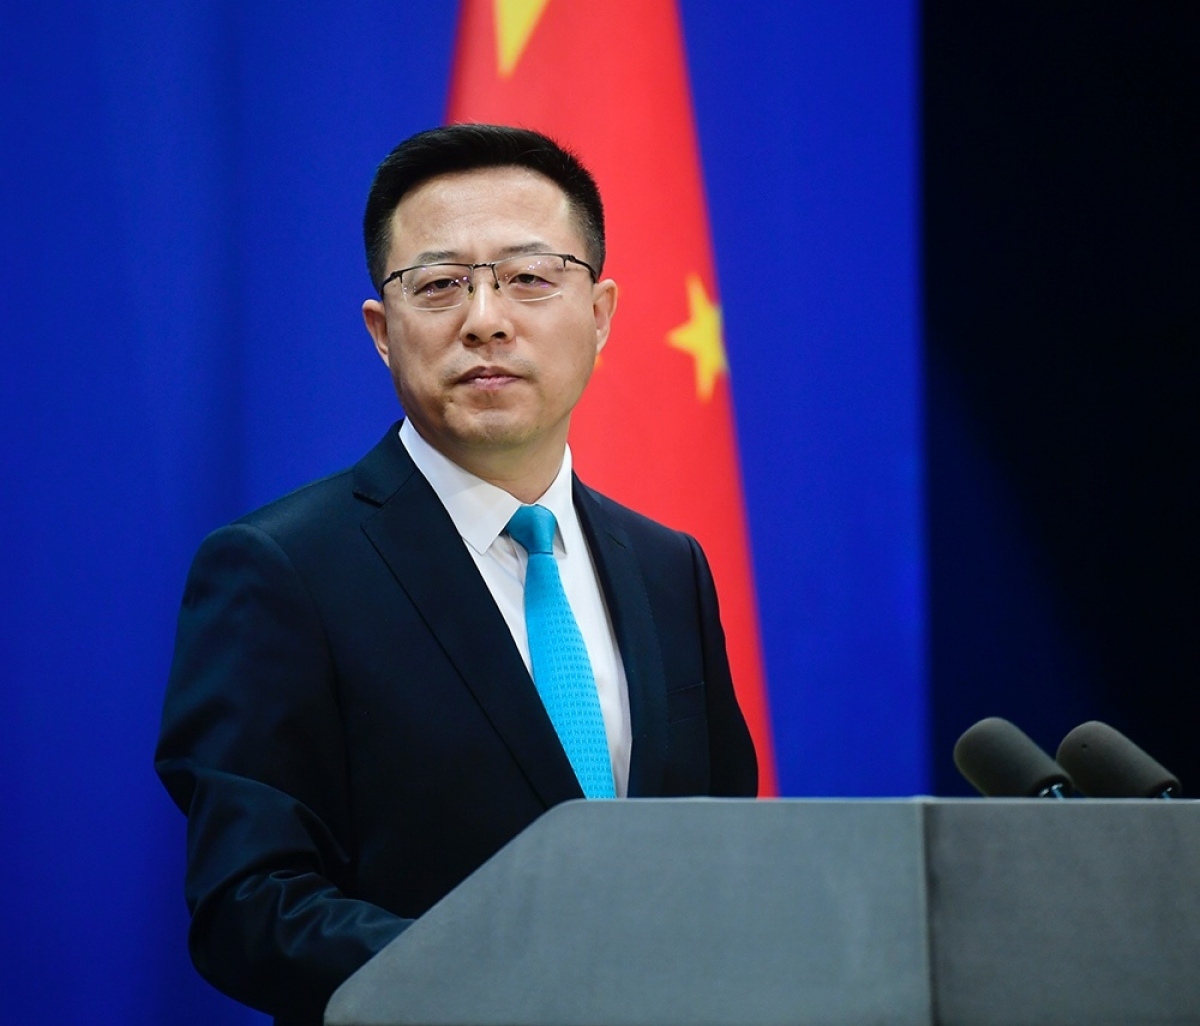 Trung Quốc khẳng định Nghị quyết 2758, tuyên bố Đài Loan là phần lãnh thổ không tách rời